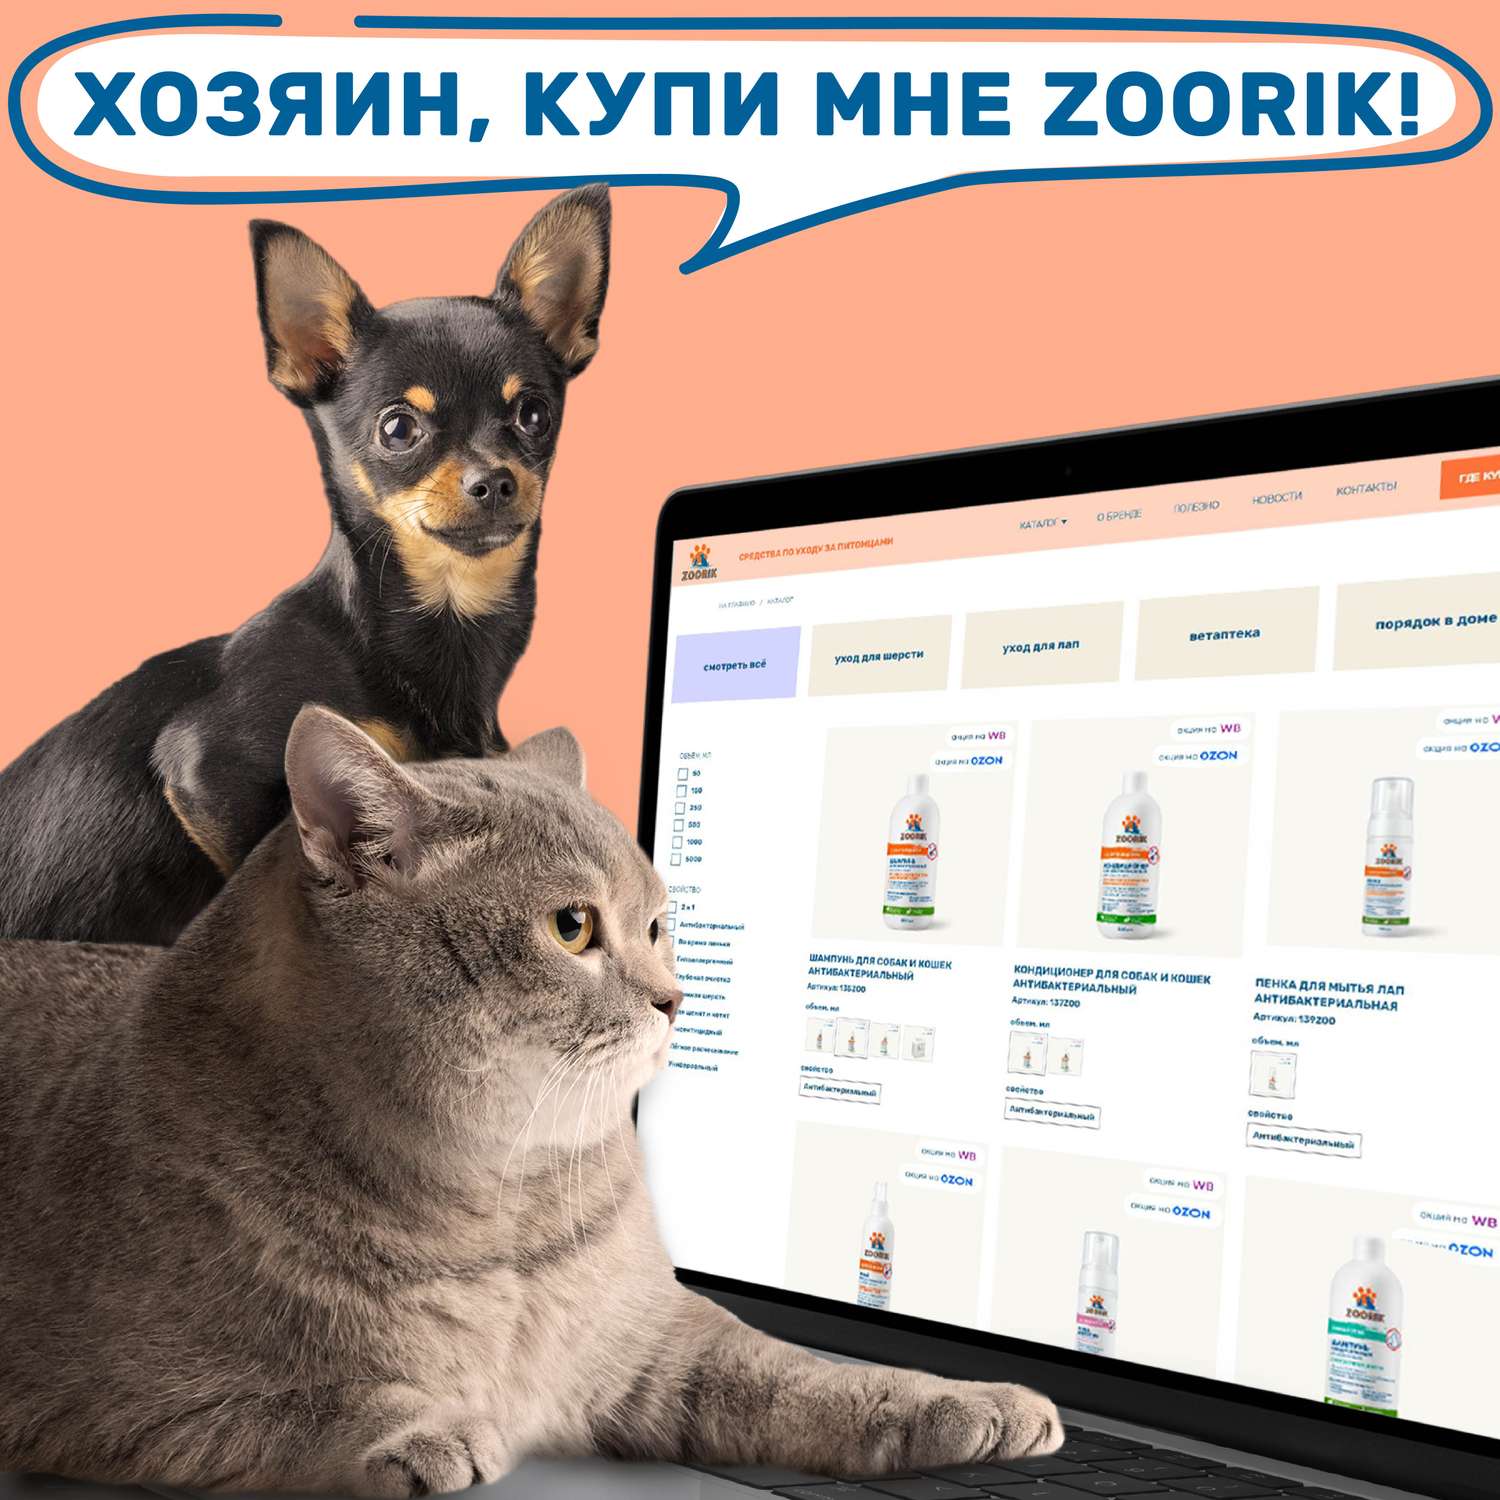 Шампунь для собак и кошек ZOORIK универсальный 500 мл - фото 12